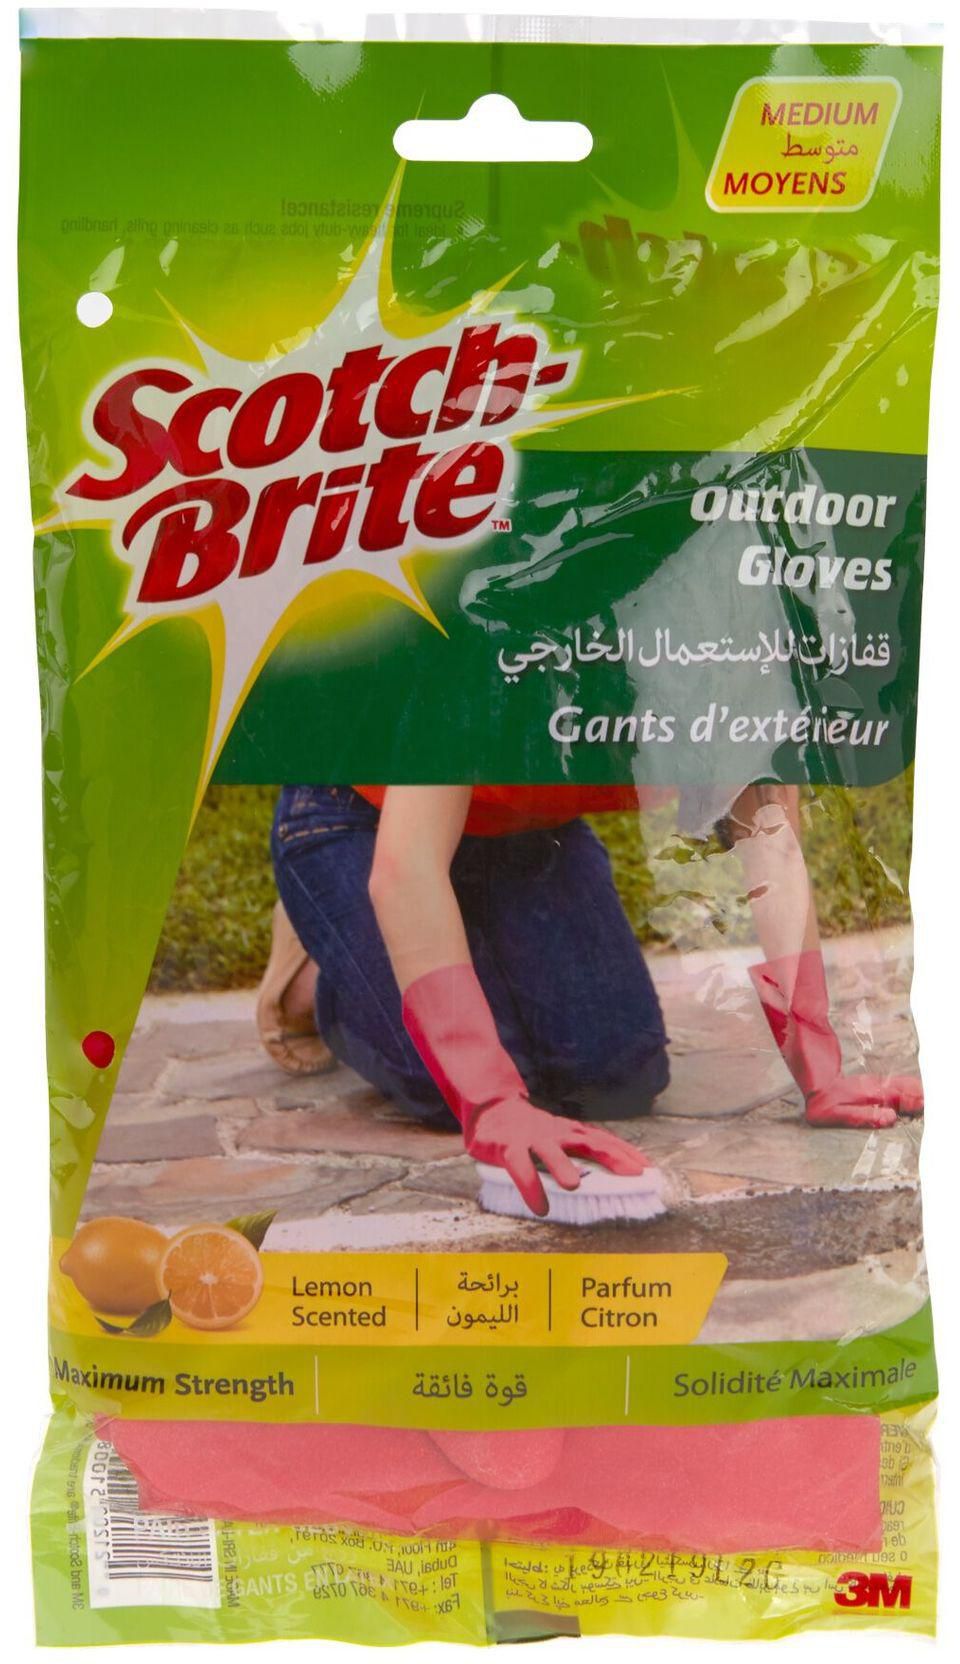 3M Scotch-Brite Outdoor Gloves (Medium)